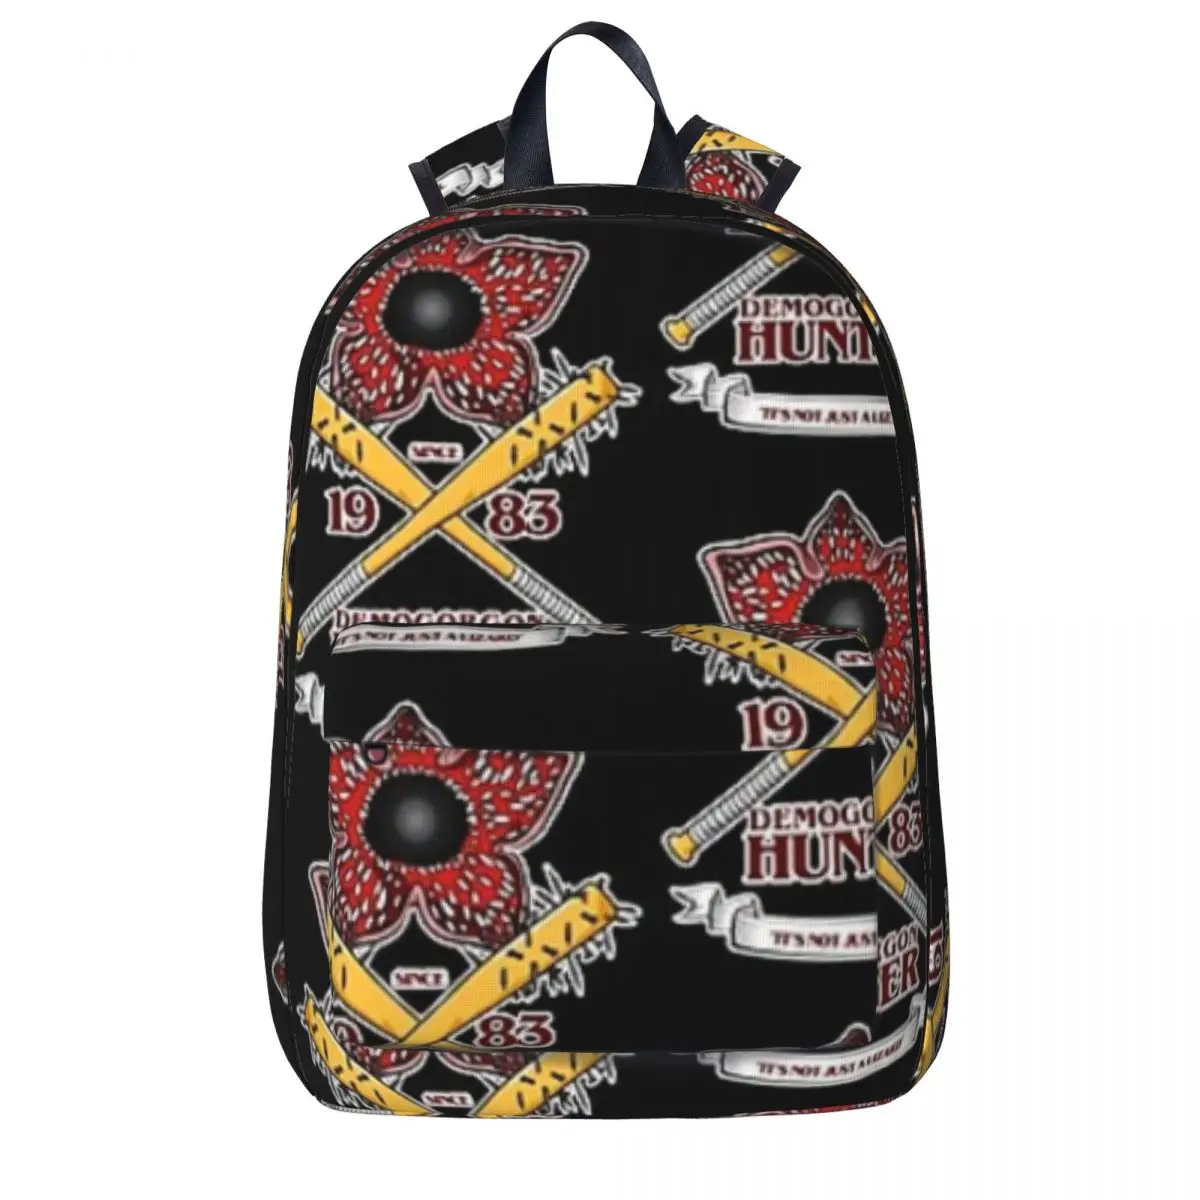 

STRANGER THINGS 3 DEMOGORGON HUNTER Backpack Boys Girls Bookbag Students School Bag Kids Rucksack Laptop Rucksack Shoulder Bag